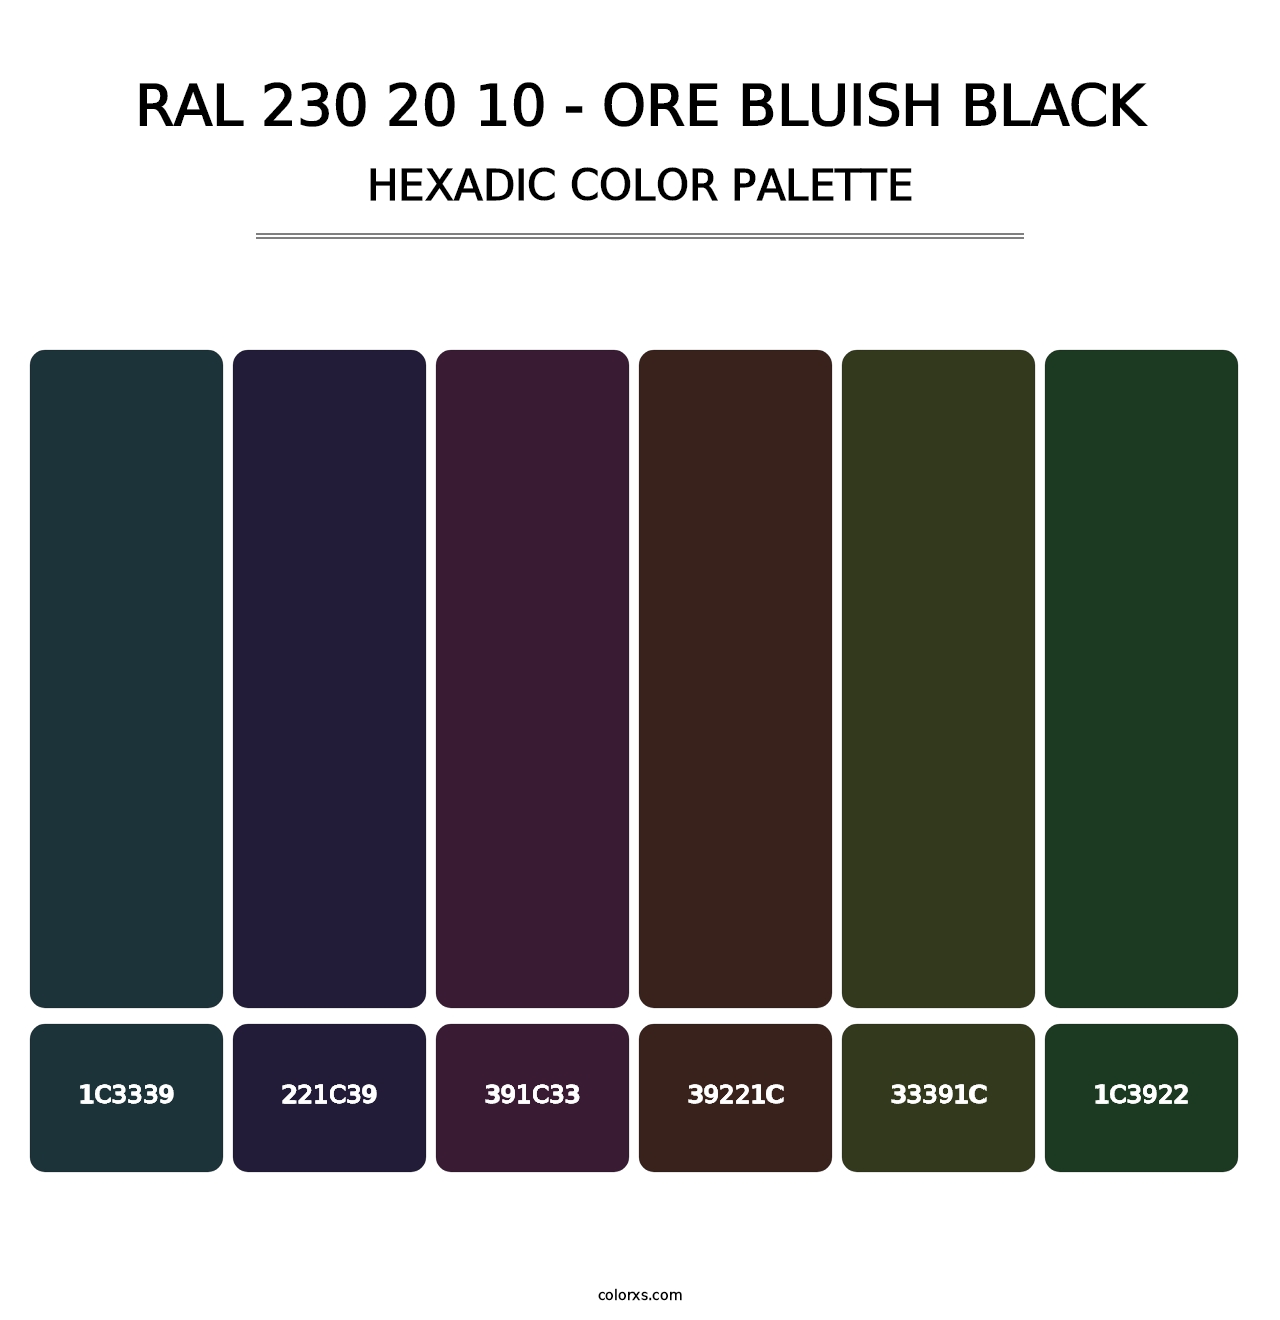 RAL 230 20 10 - Ore Bluish Black - Hexadic Color Palette